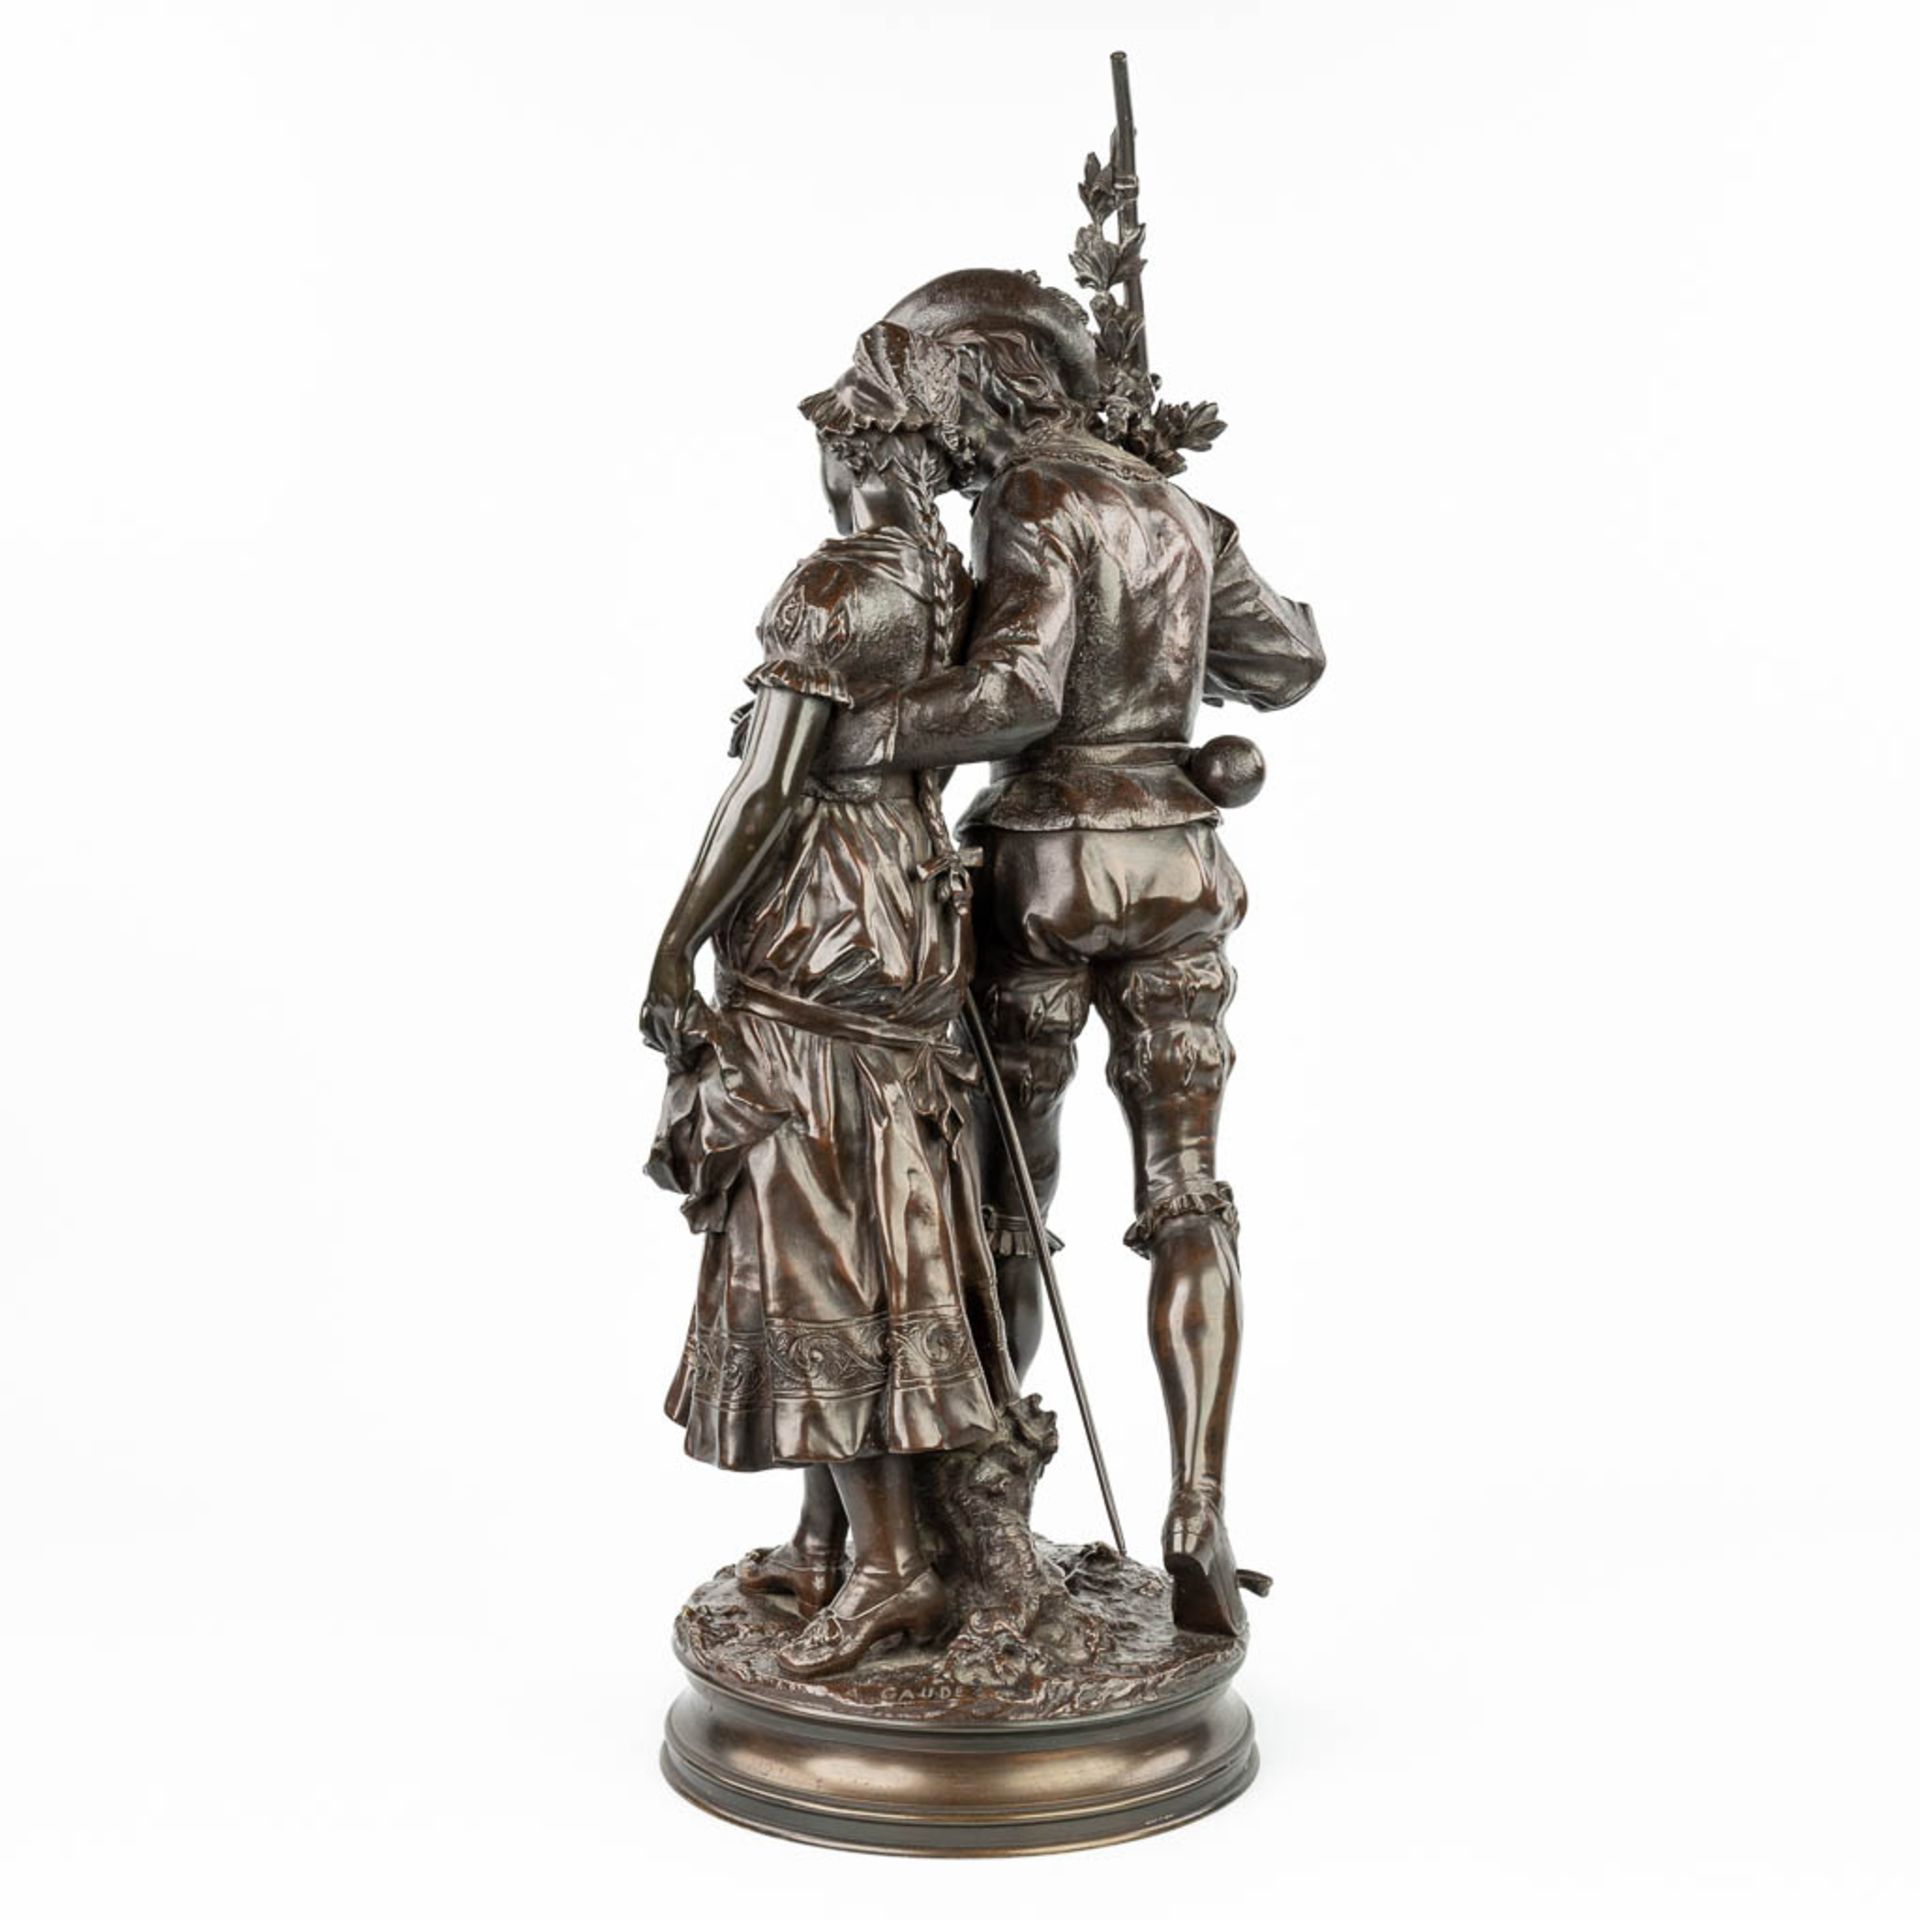 Adrien Etienne GAUDEZ (1845-1902) 'Retour de Chasse' a bronze statue on a revolving base. (H:72cm) - Image 12 of 15